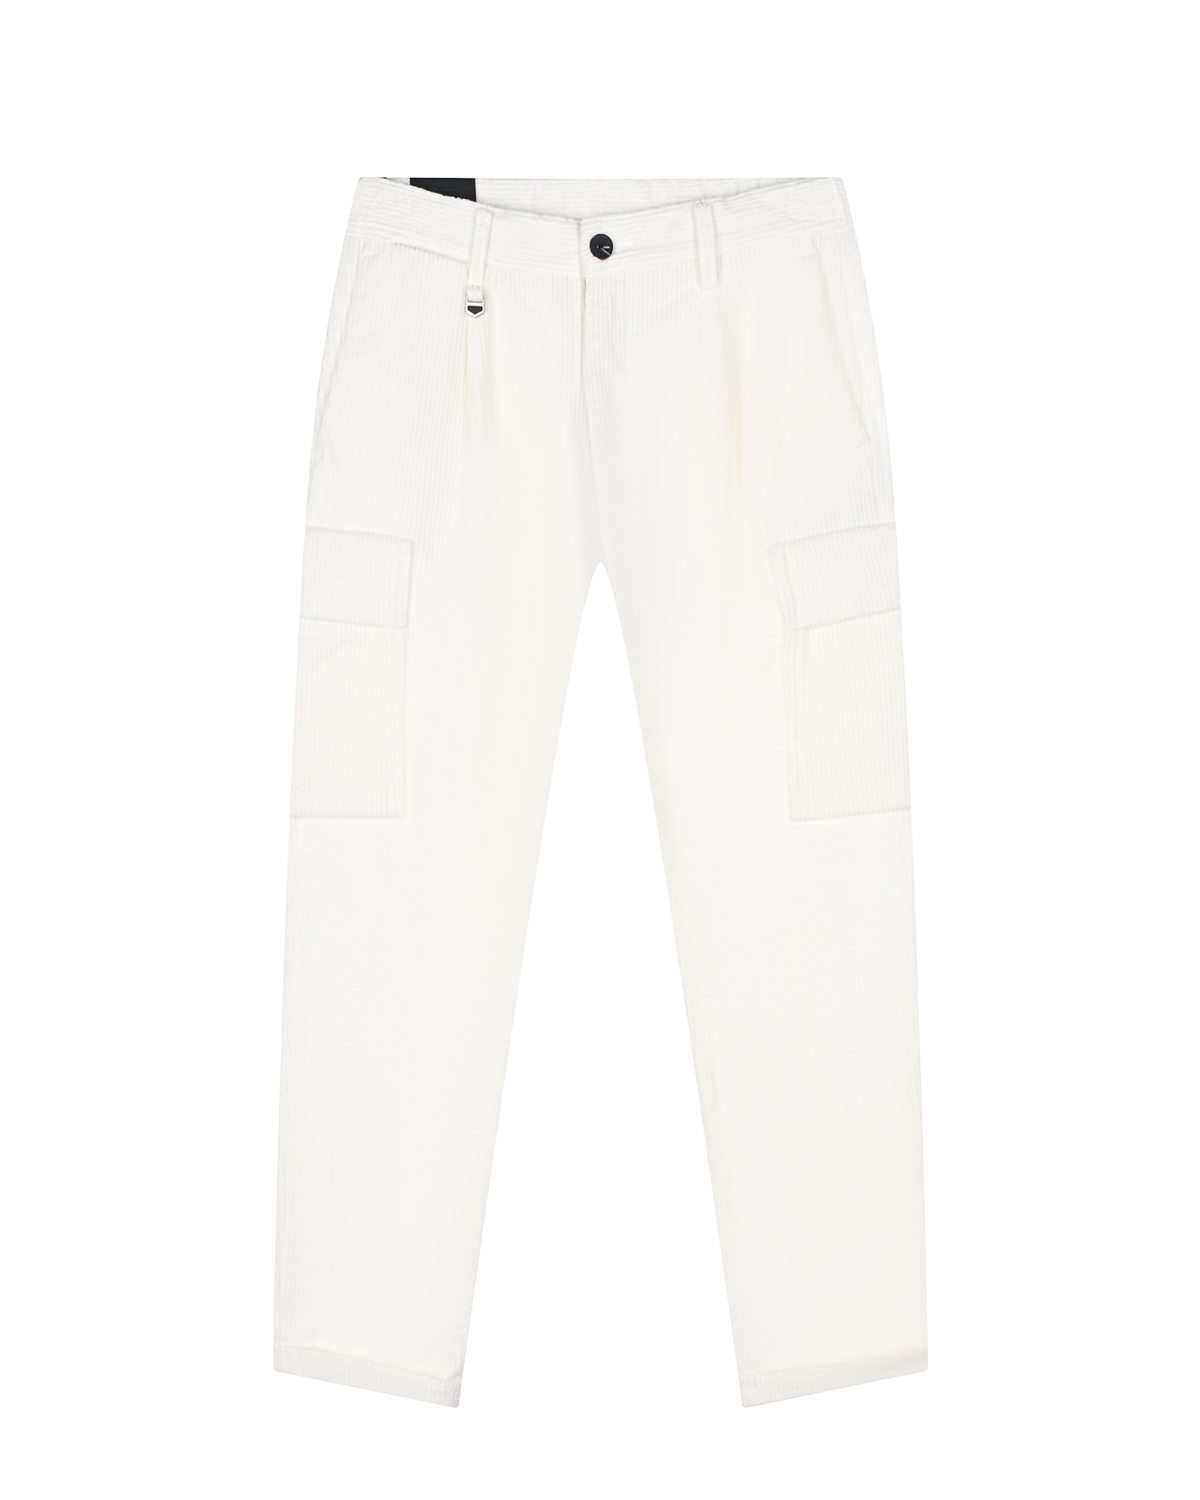 Вельветовые брюки кремового цвета Antony Morato детские, размер 152